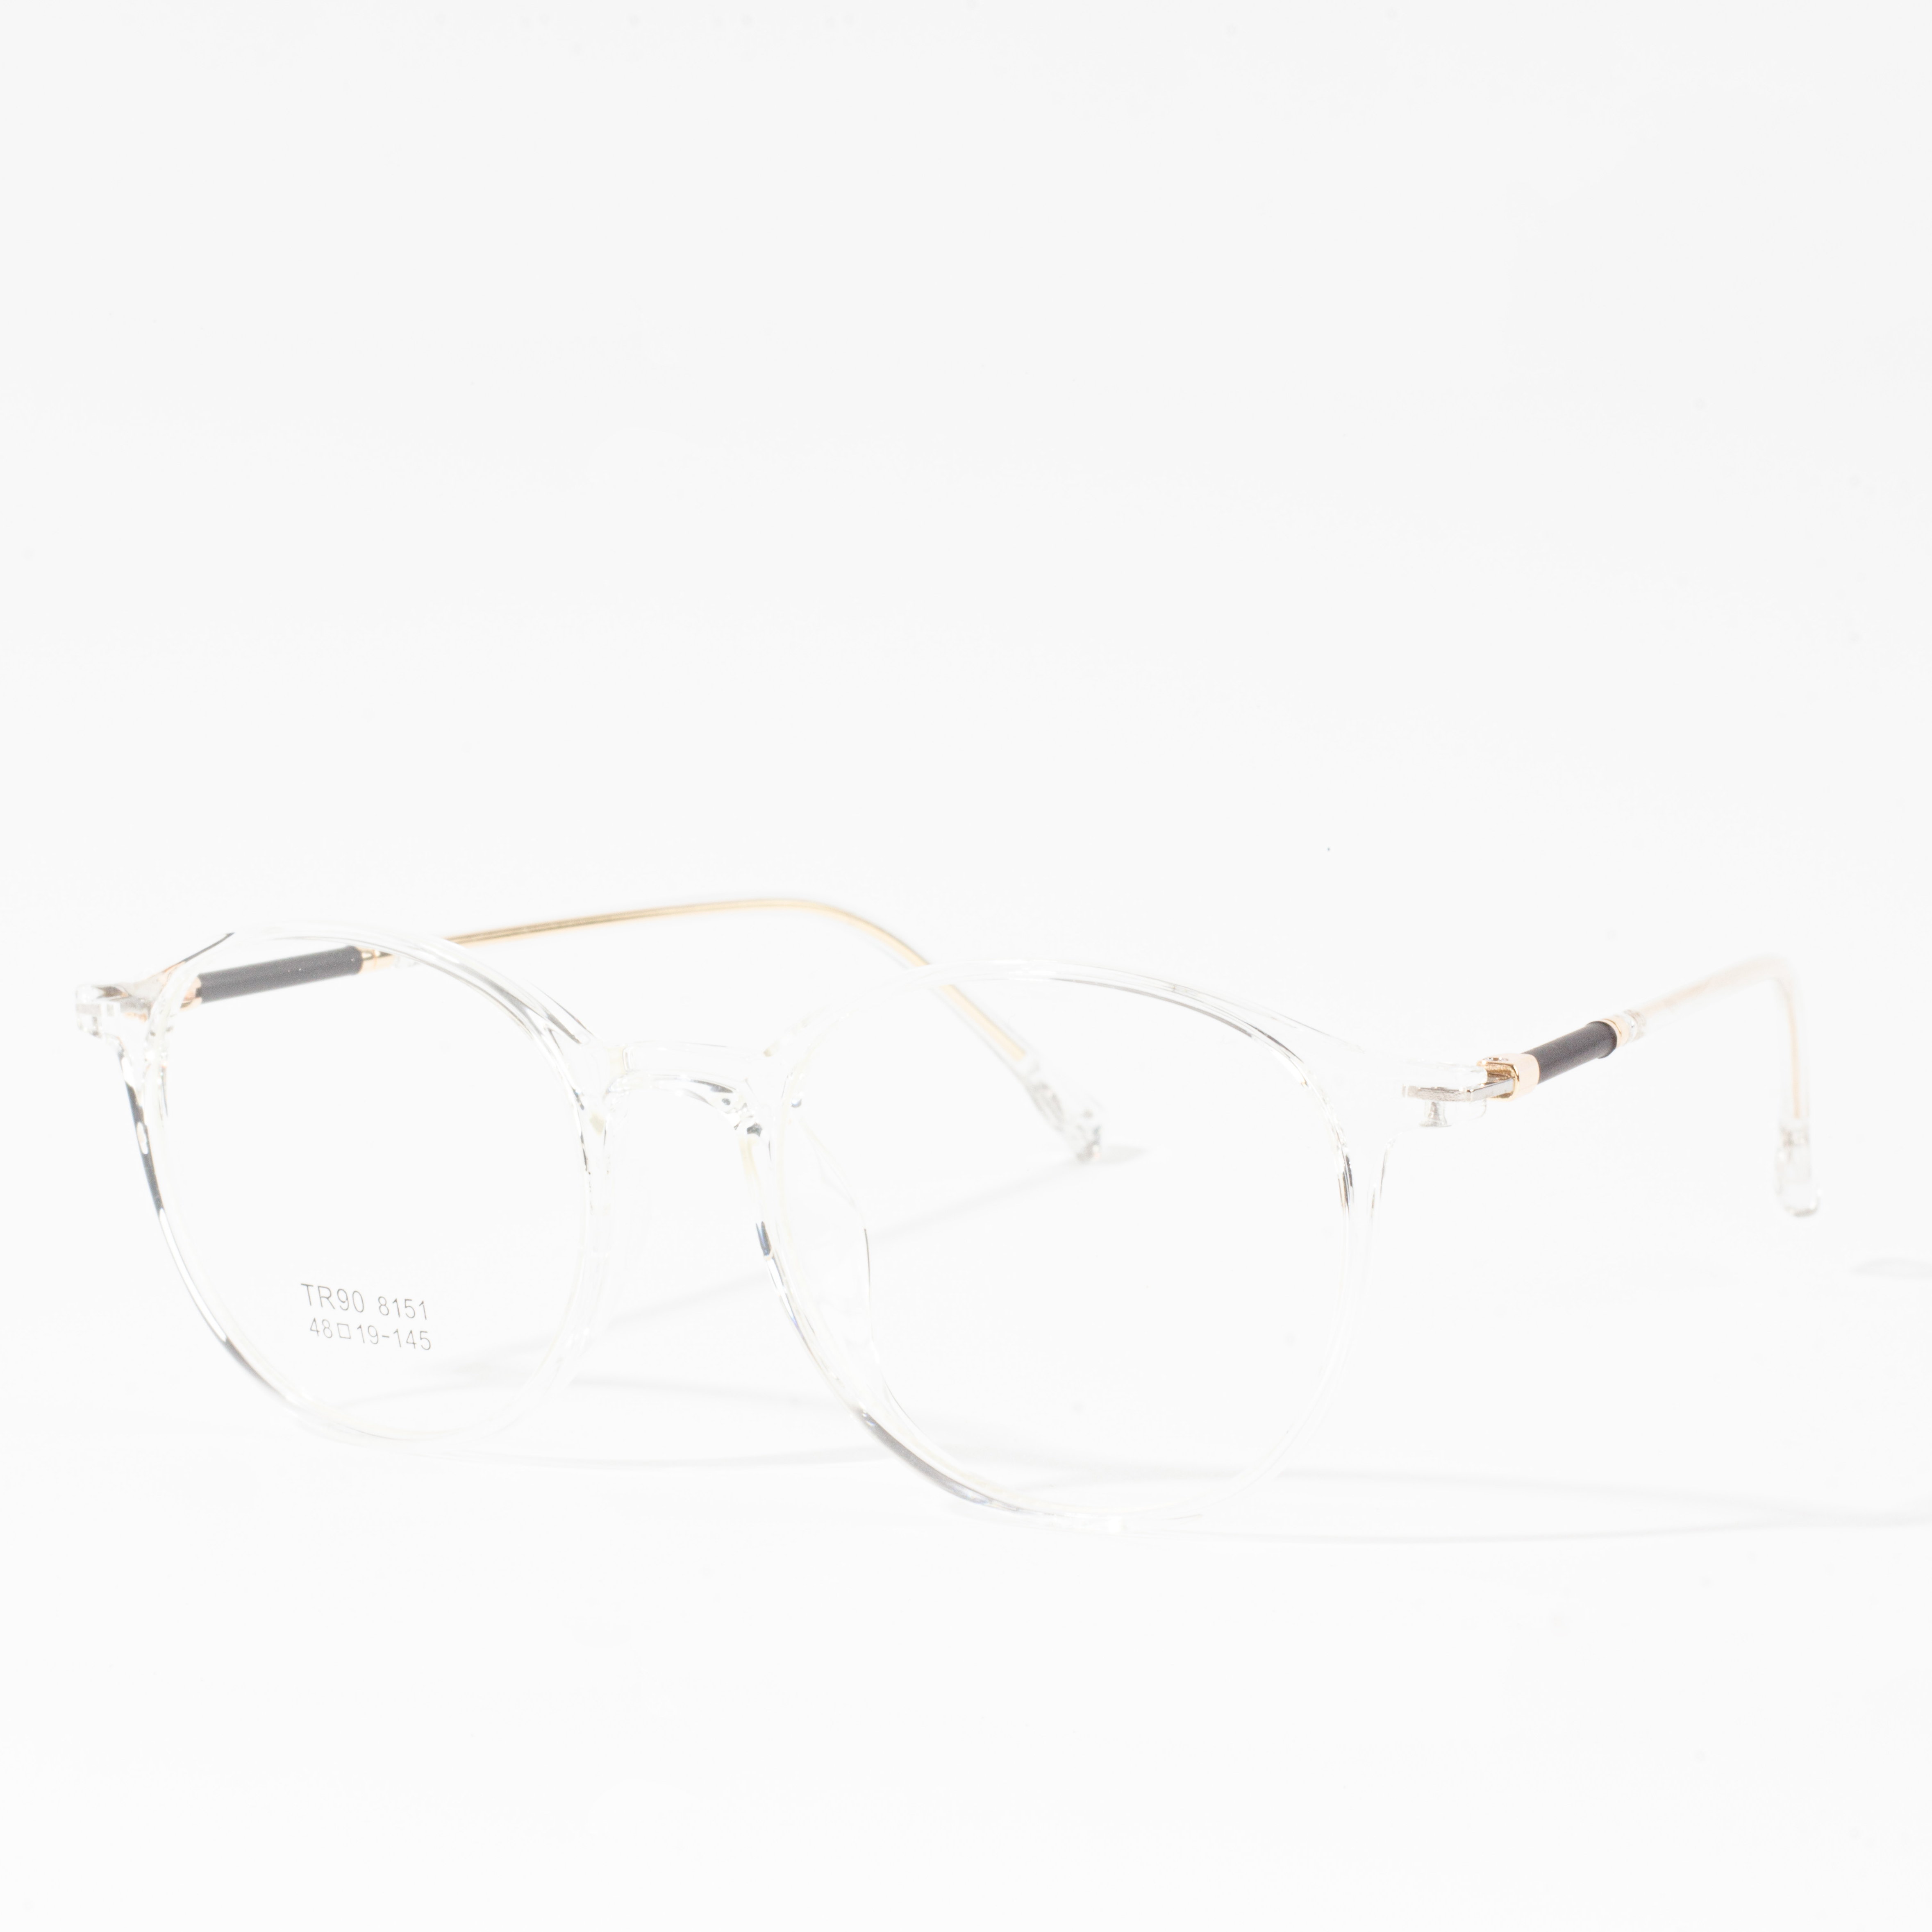 šampionové brýlové obruby